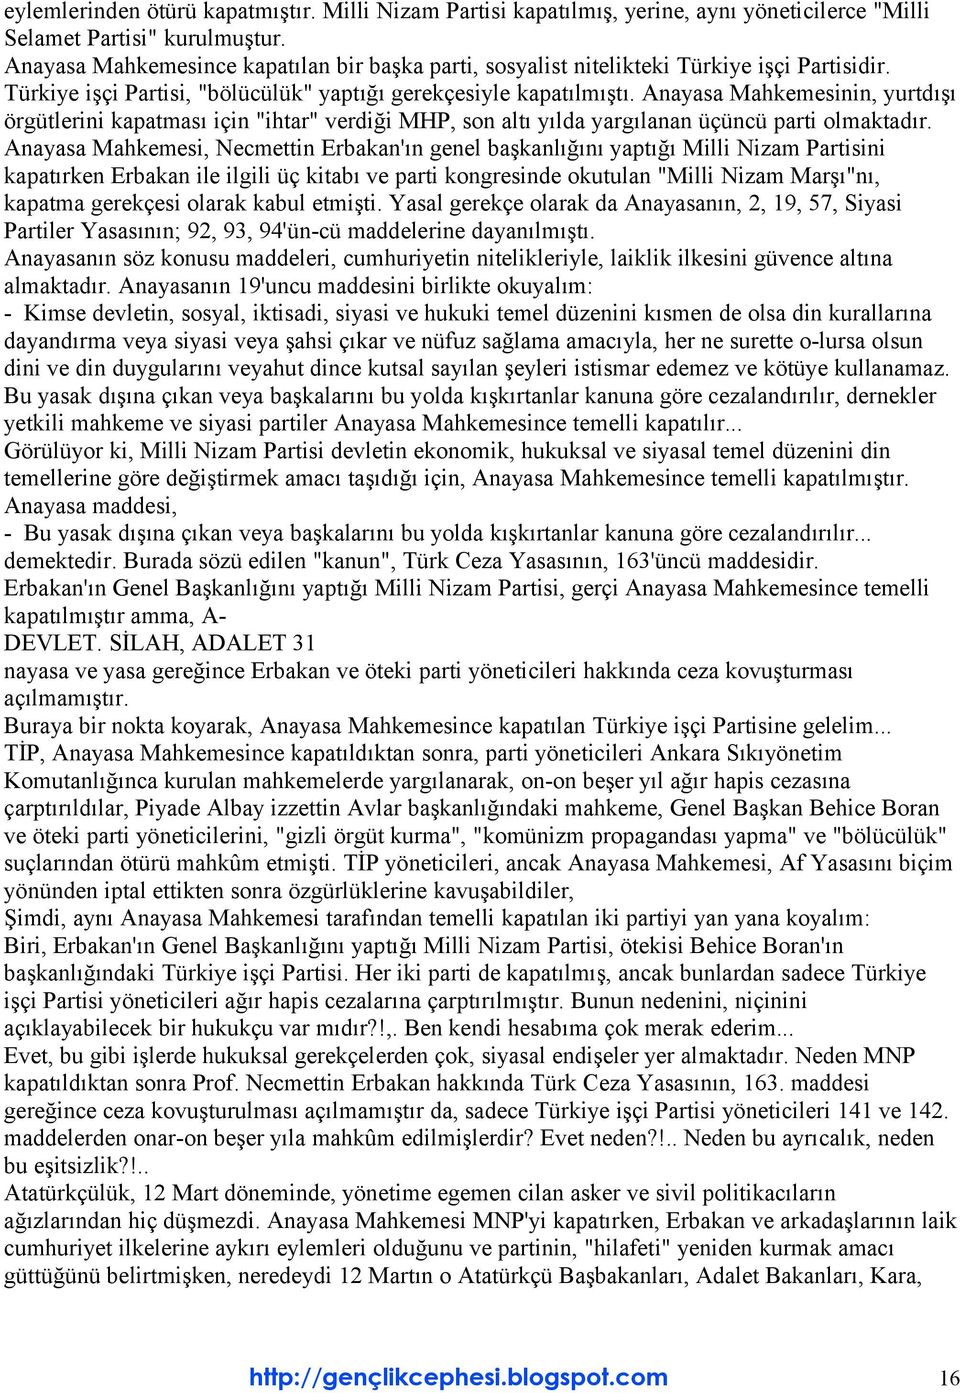 Anayasa Mahkemesinin, yurtdışı örgütlerini kapatması için "ihtar" verdiği MHP, son altı yılda yargılanan üçüncü parti olmaktadır.